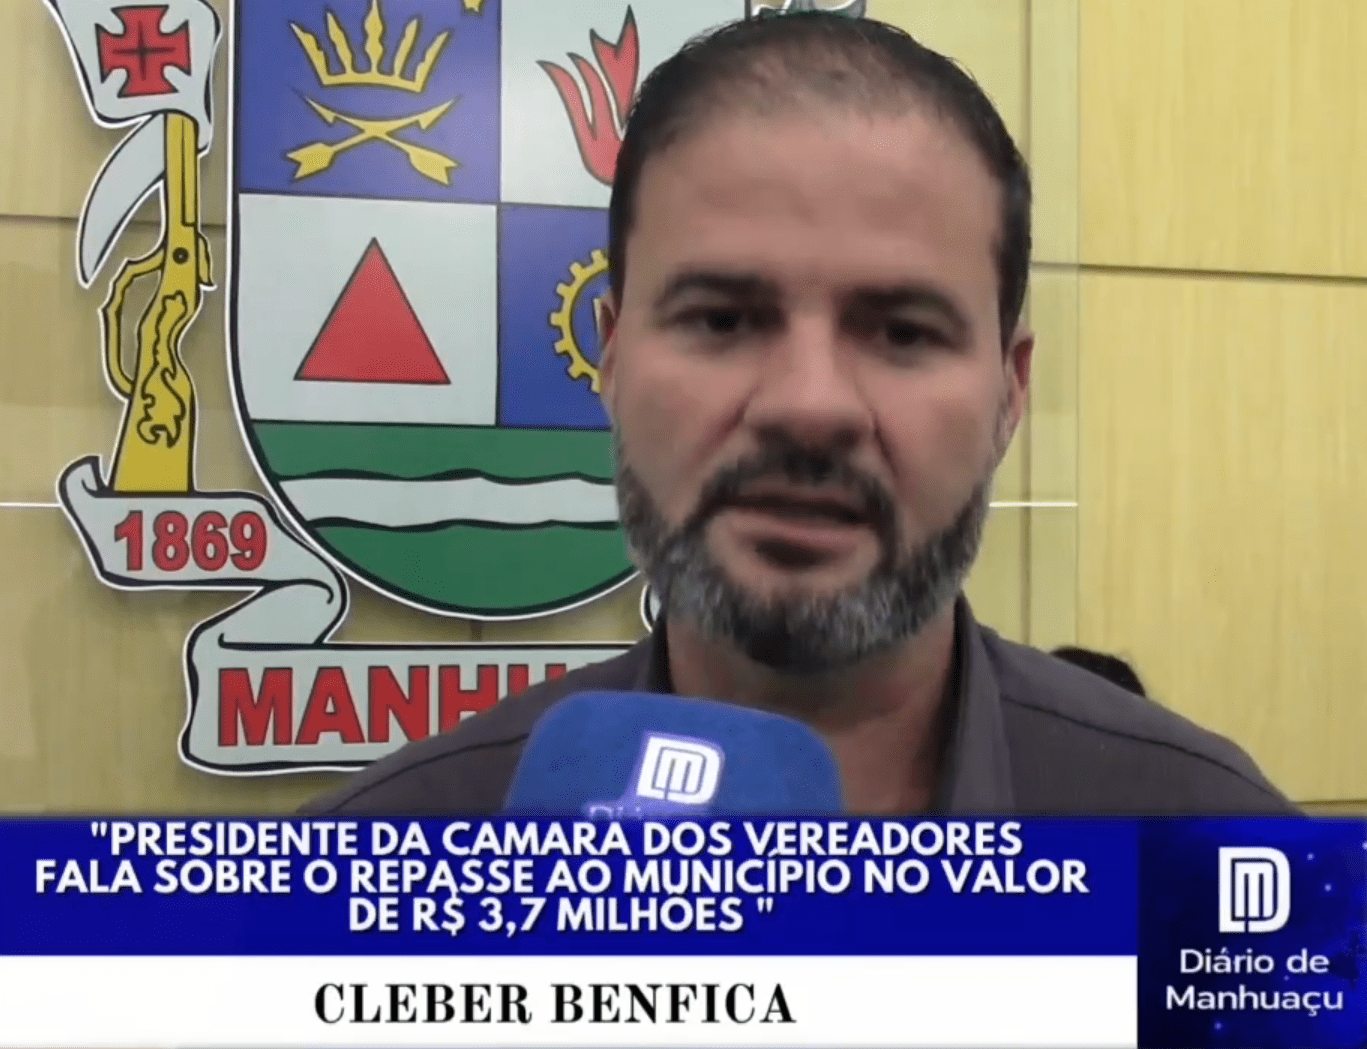 Presidente da Câmara dos Vereadores fala sobre o repasse ao município no valor de r$ 3,7 milhões